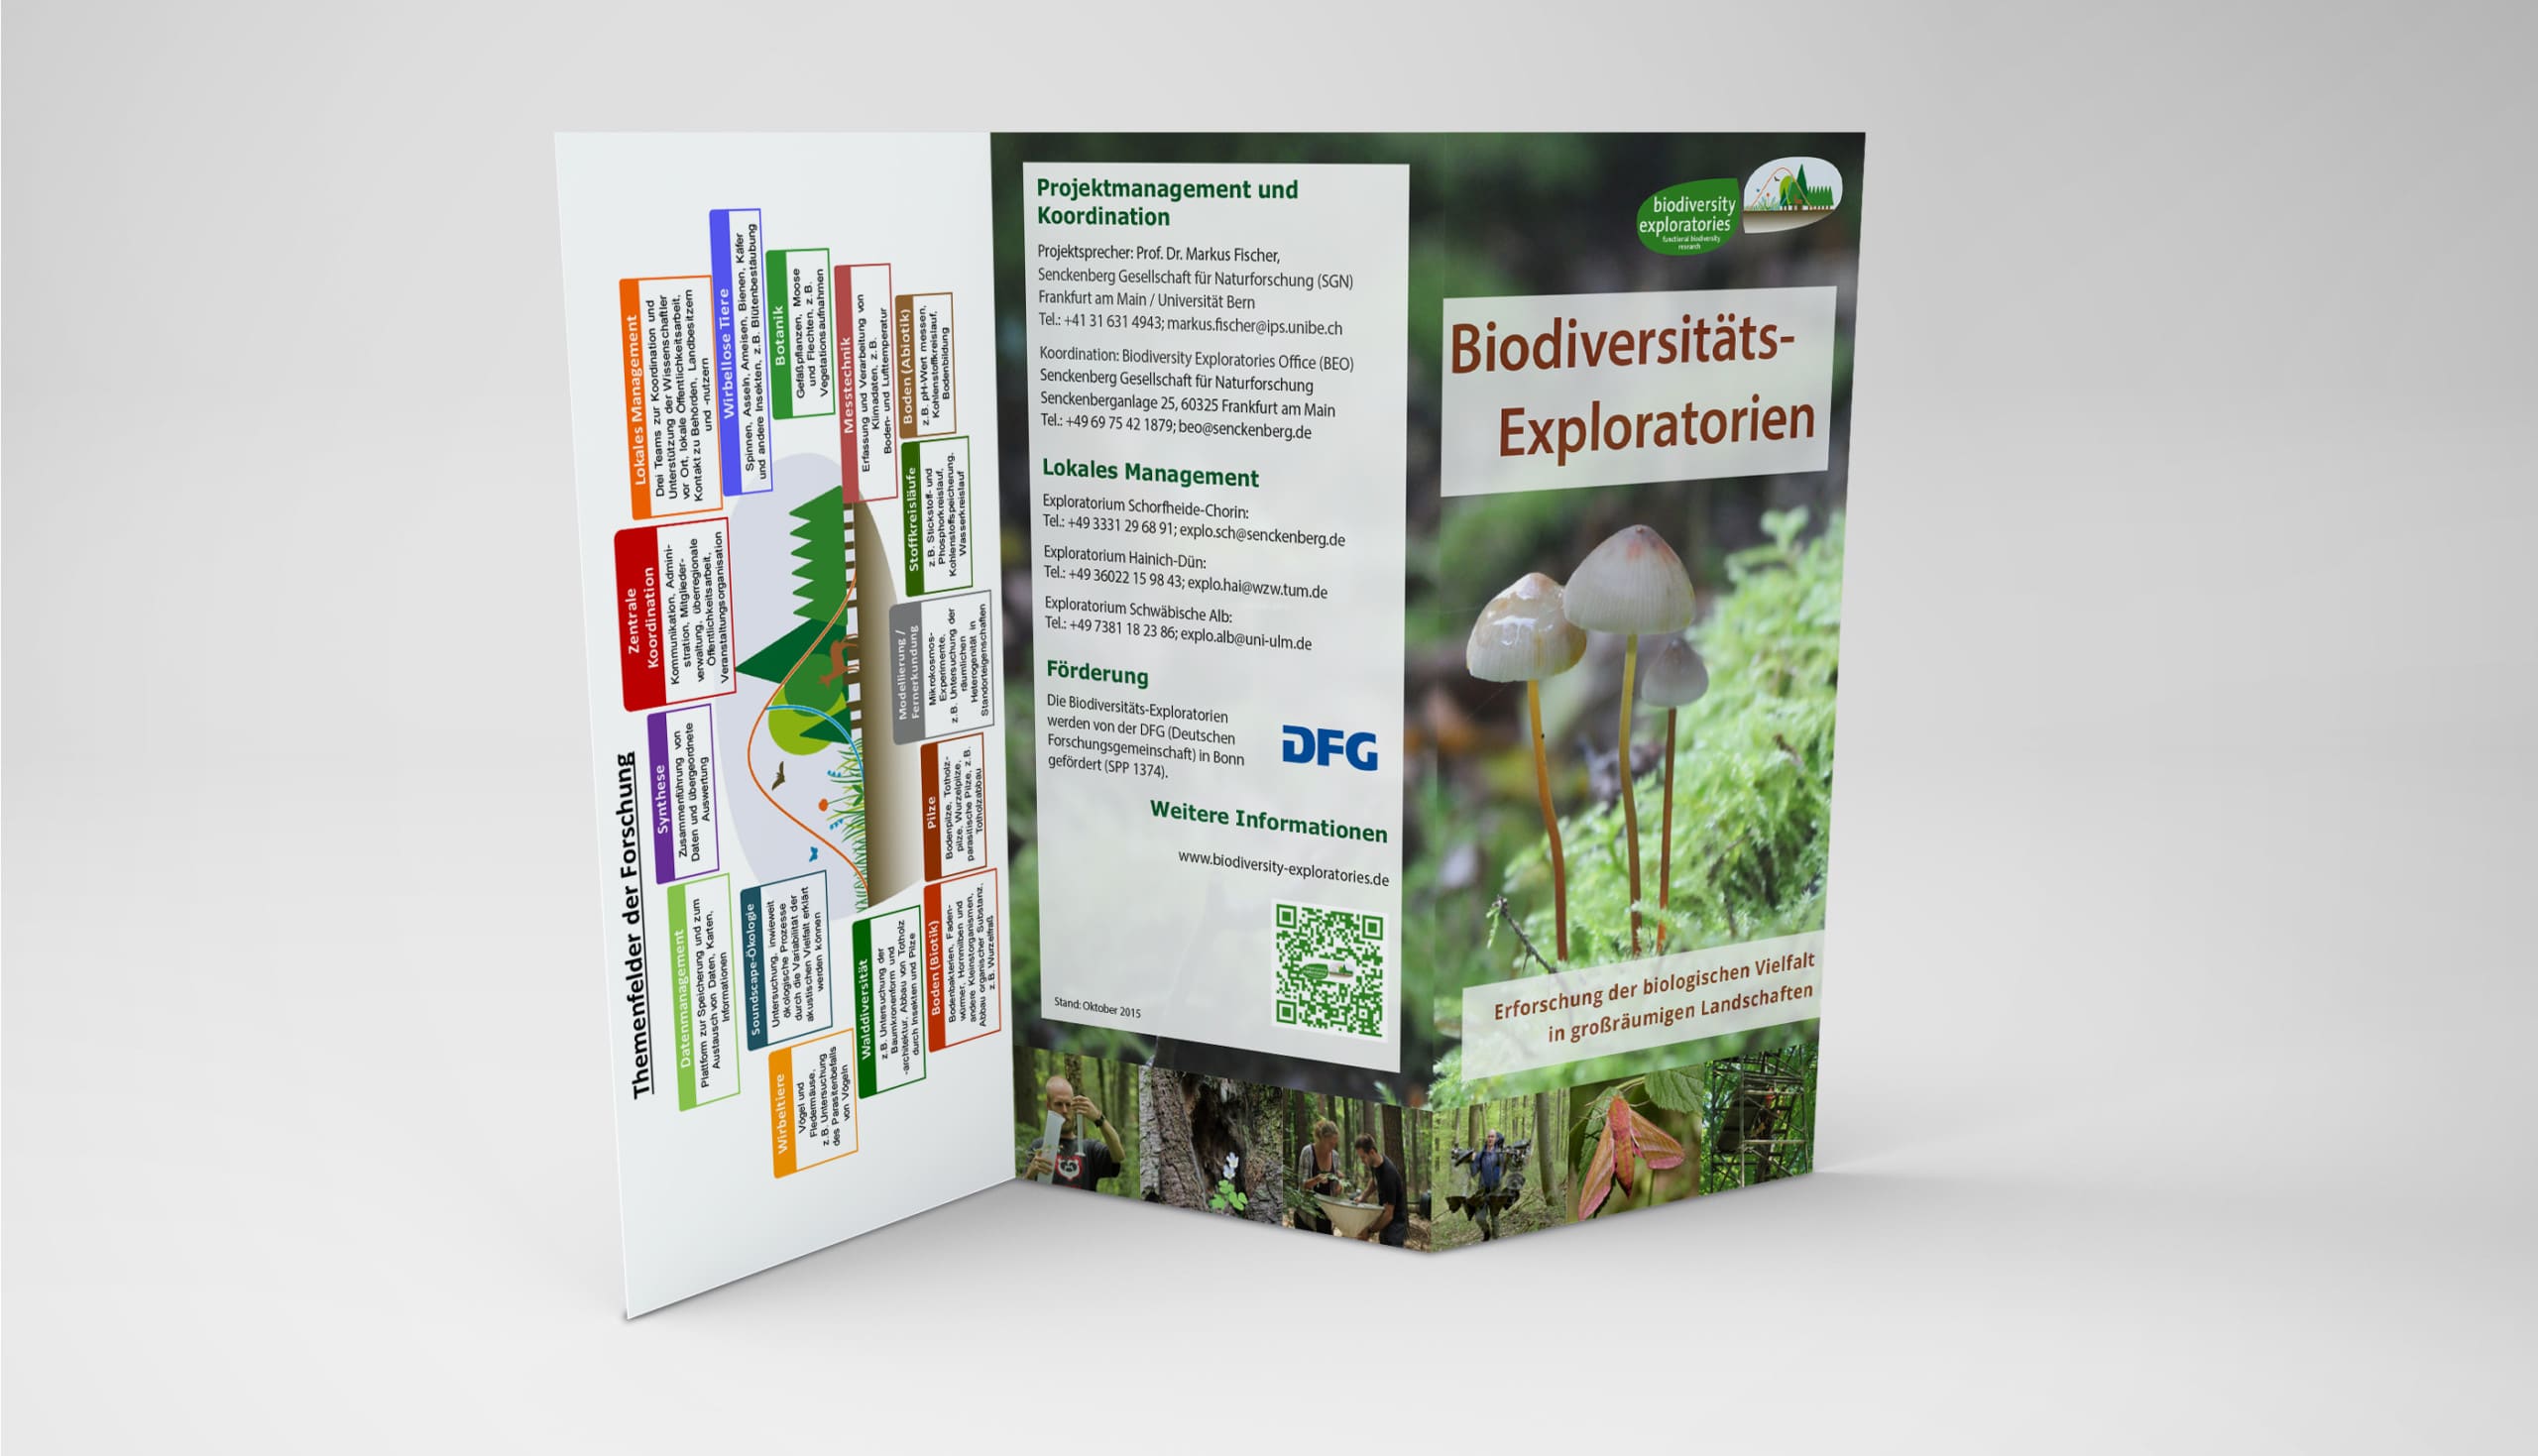 Abbildung: Das Foto zeigt einen sechsseitigen Flyer der Biodiveritäts-Exploratorien im Lang-DIN-Format.